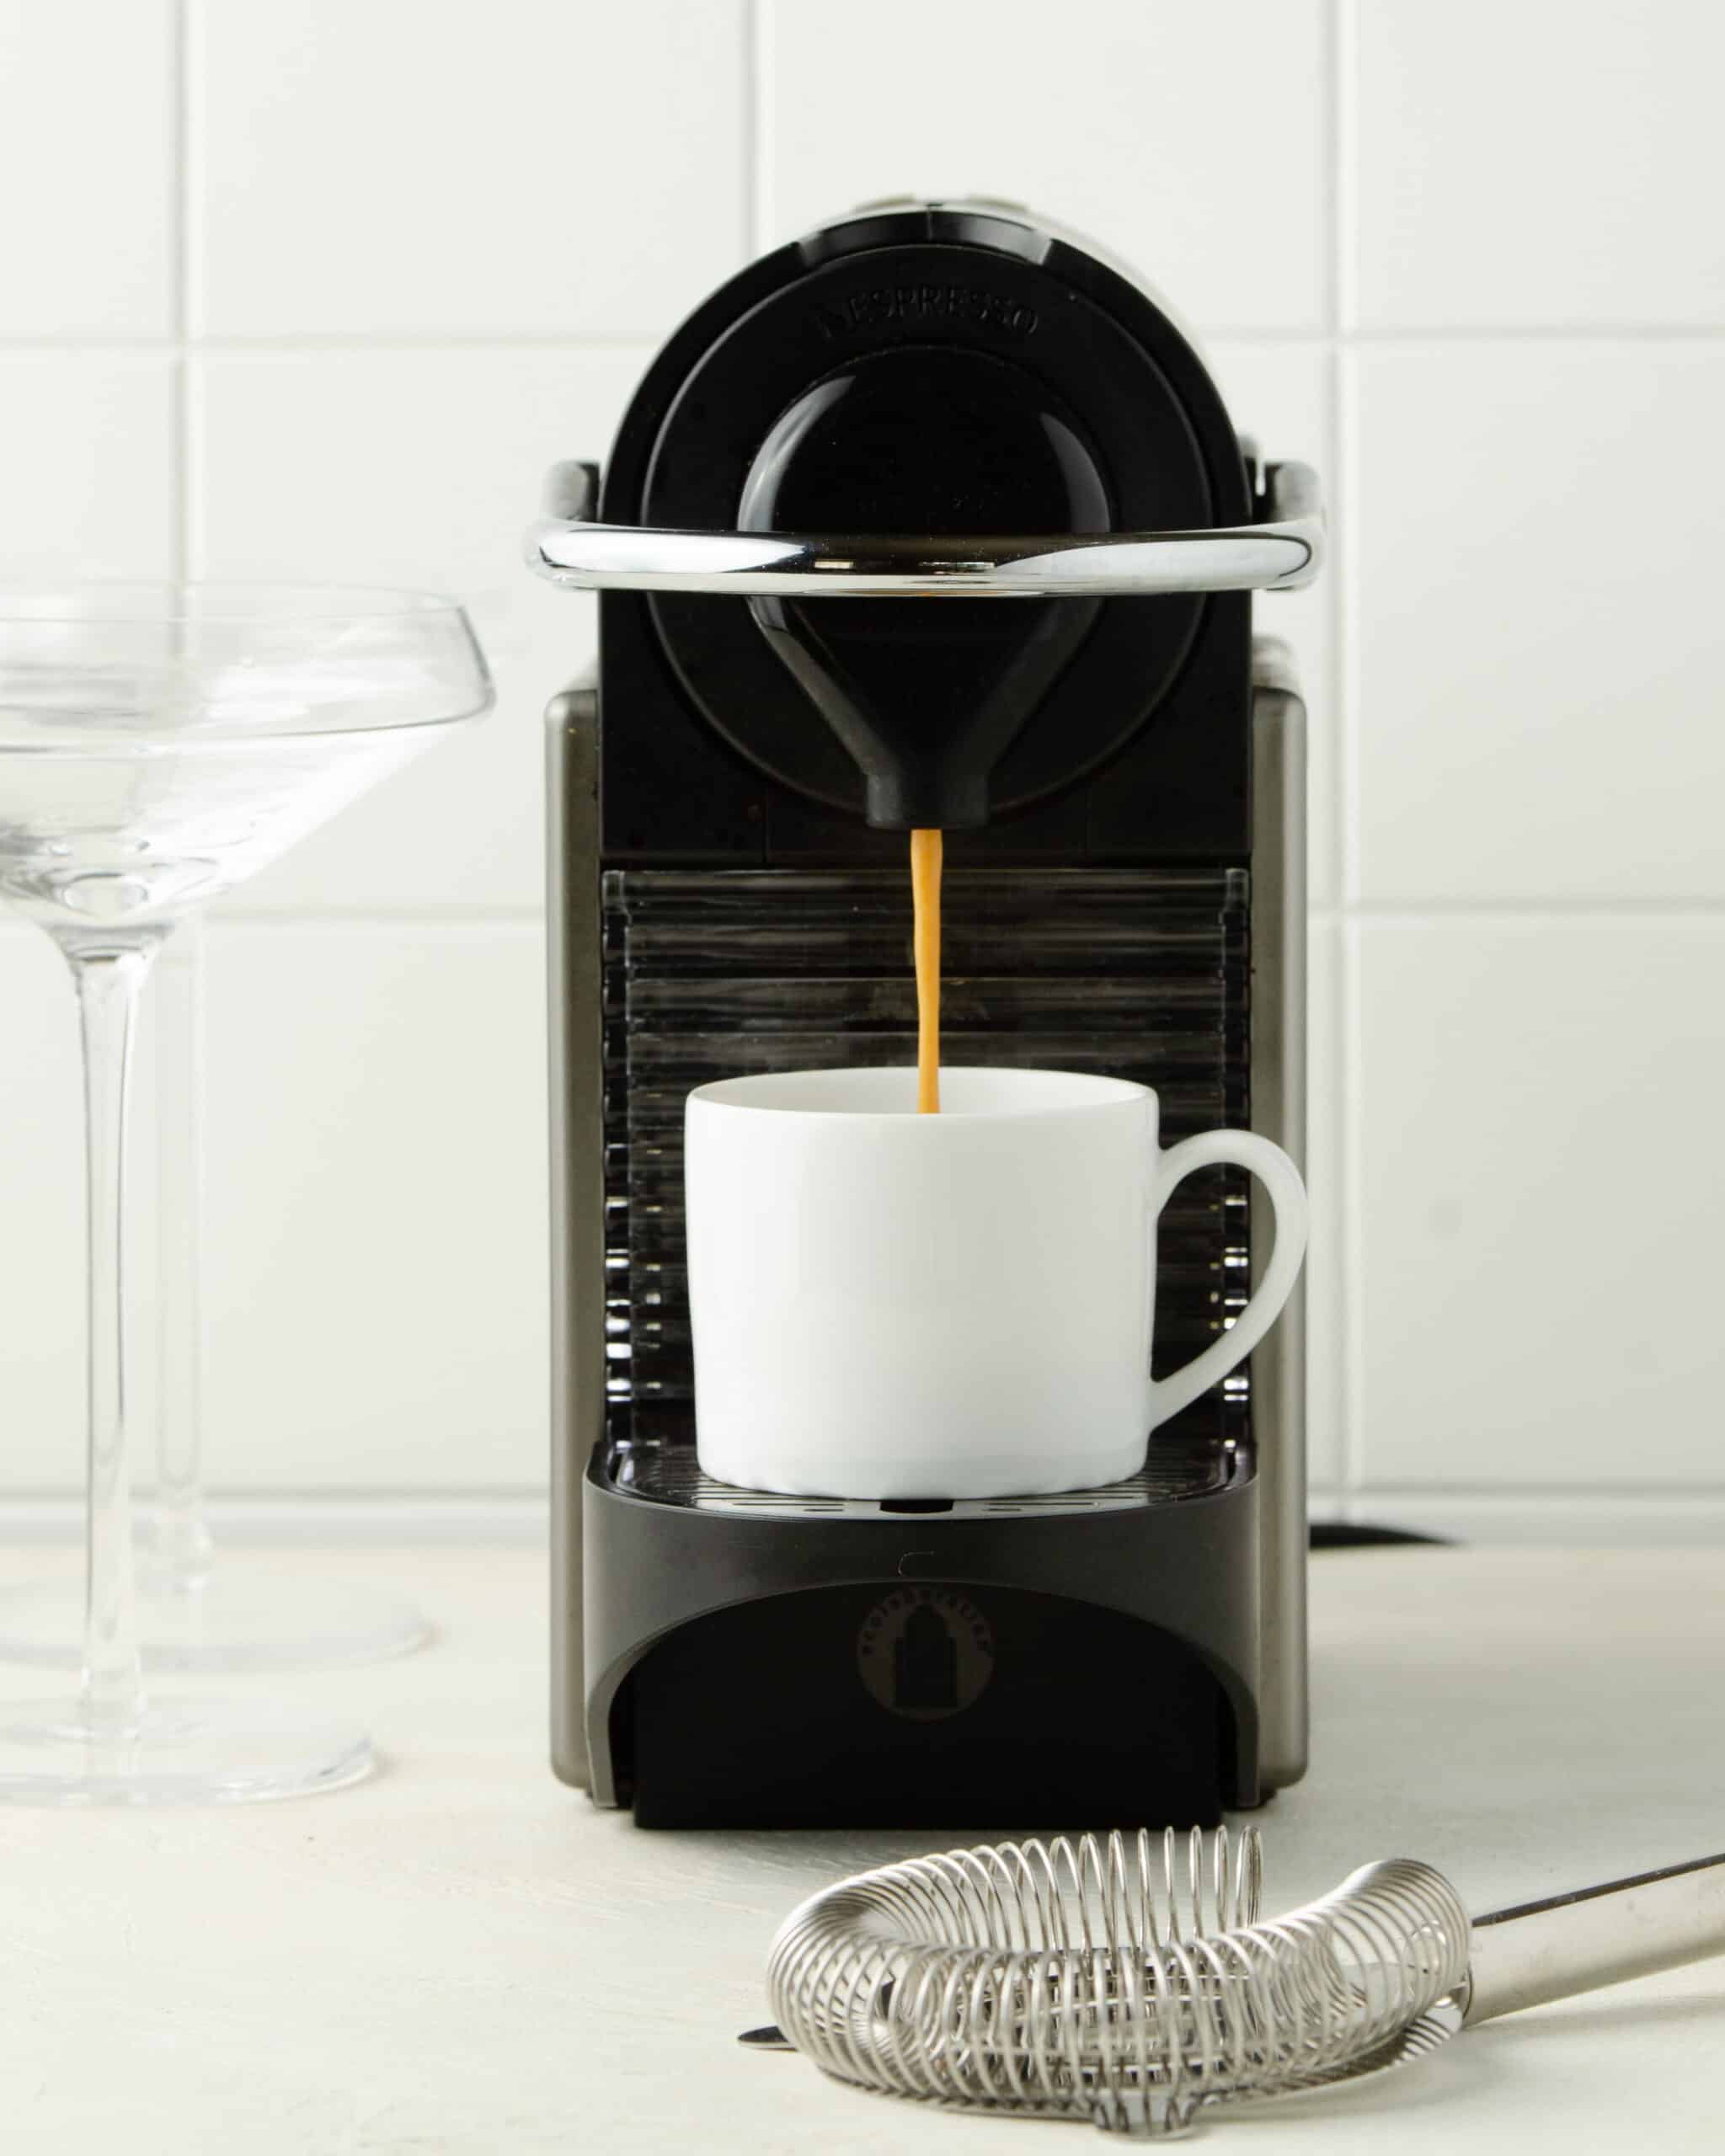 Brewing espresso into a white mug.